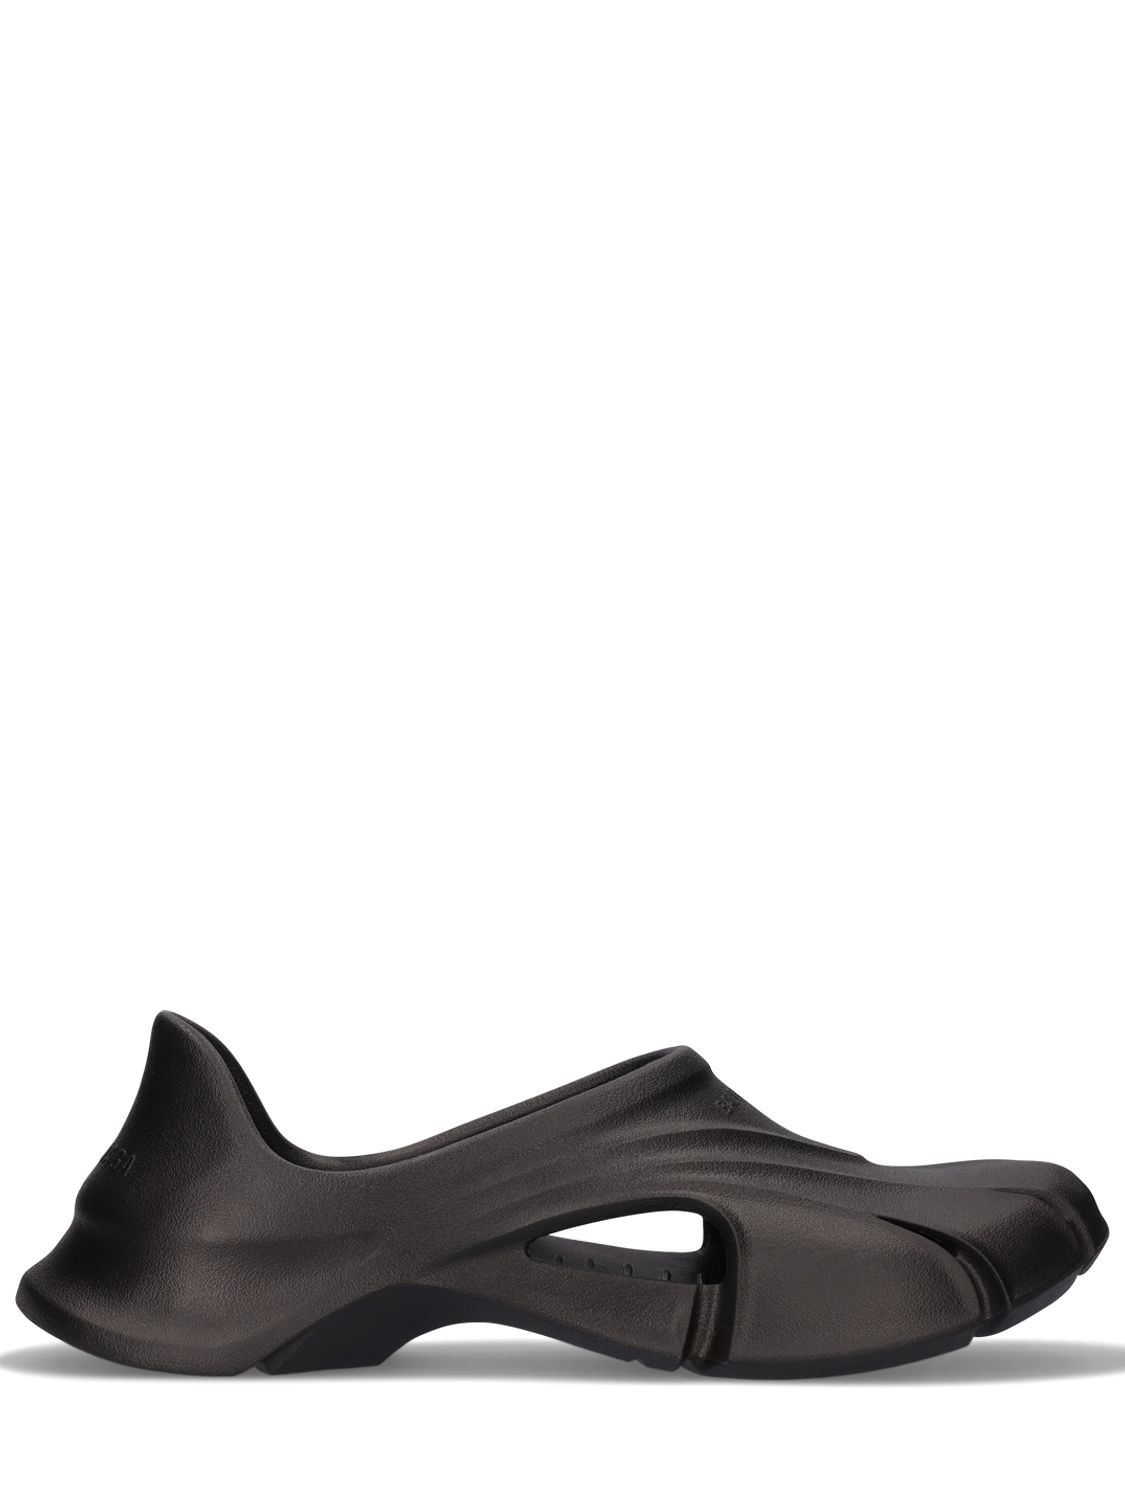 Balenciaga Eva Rubber Sandals In Black